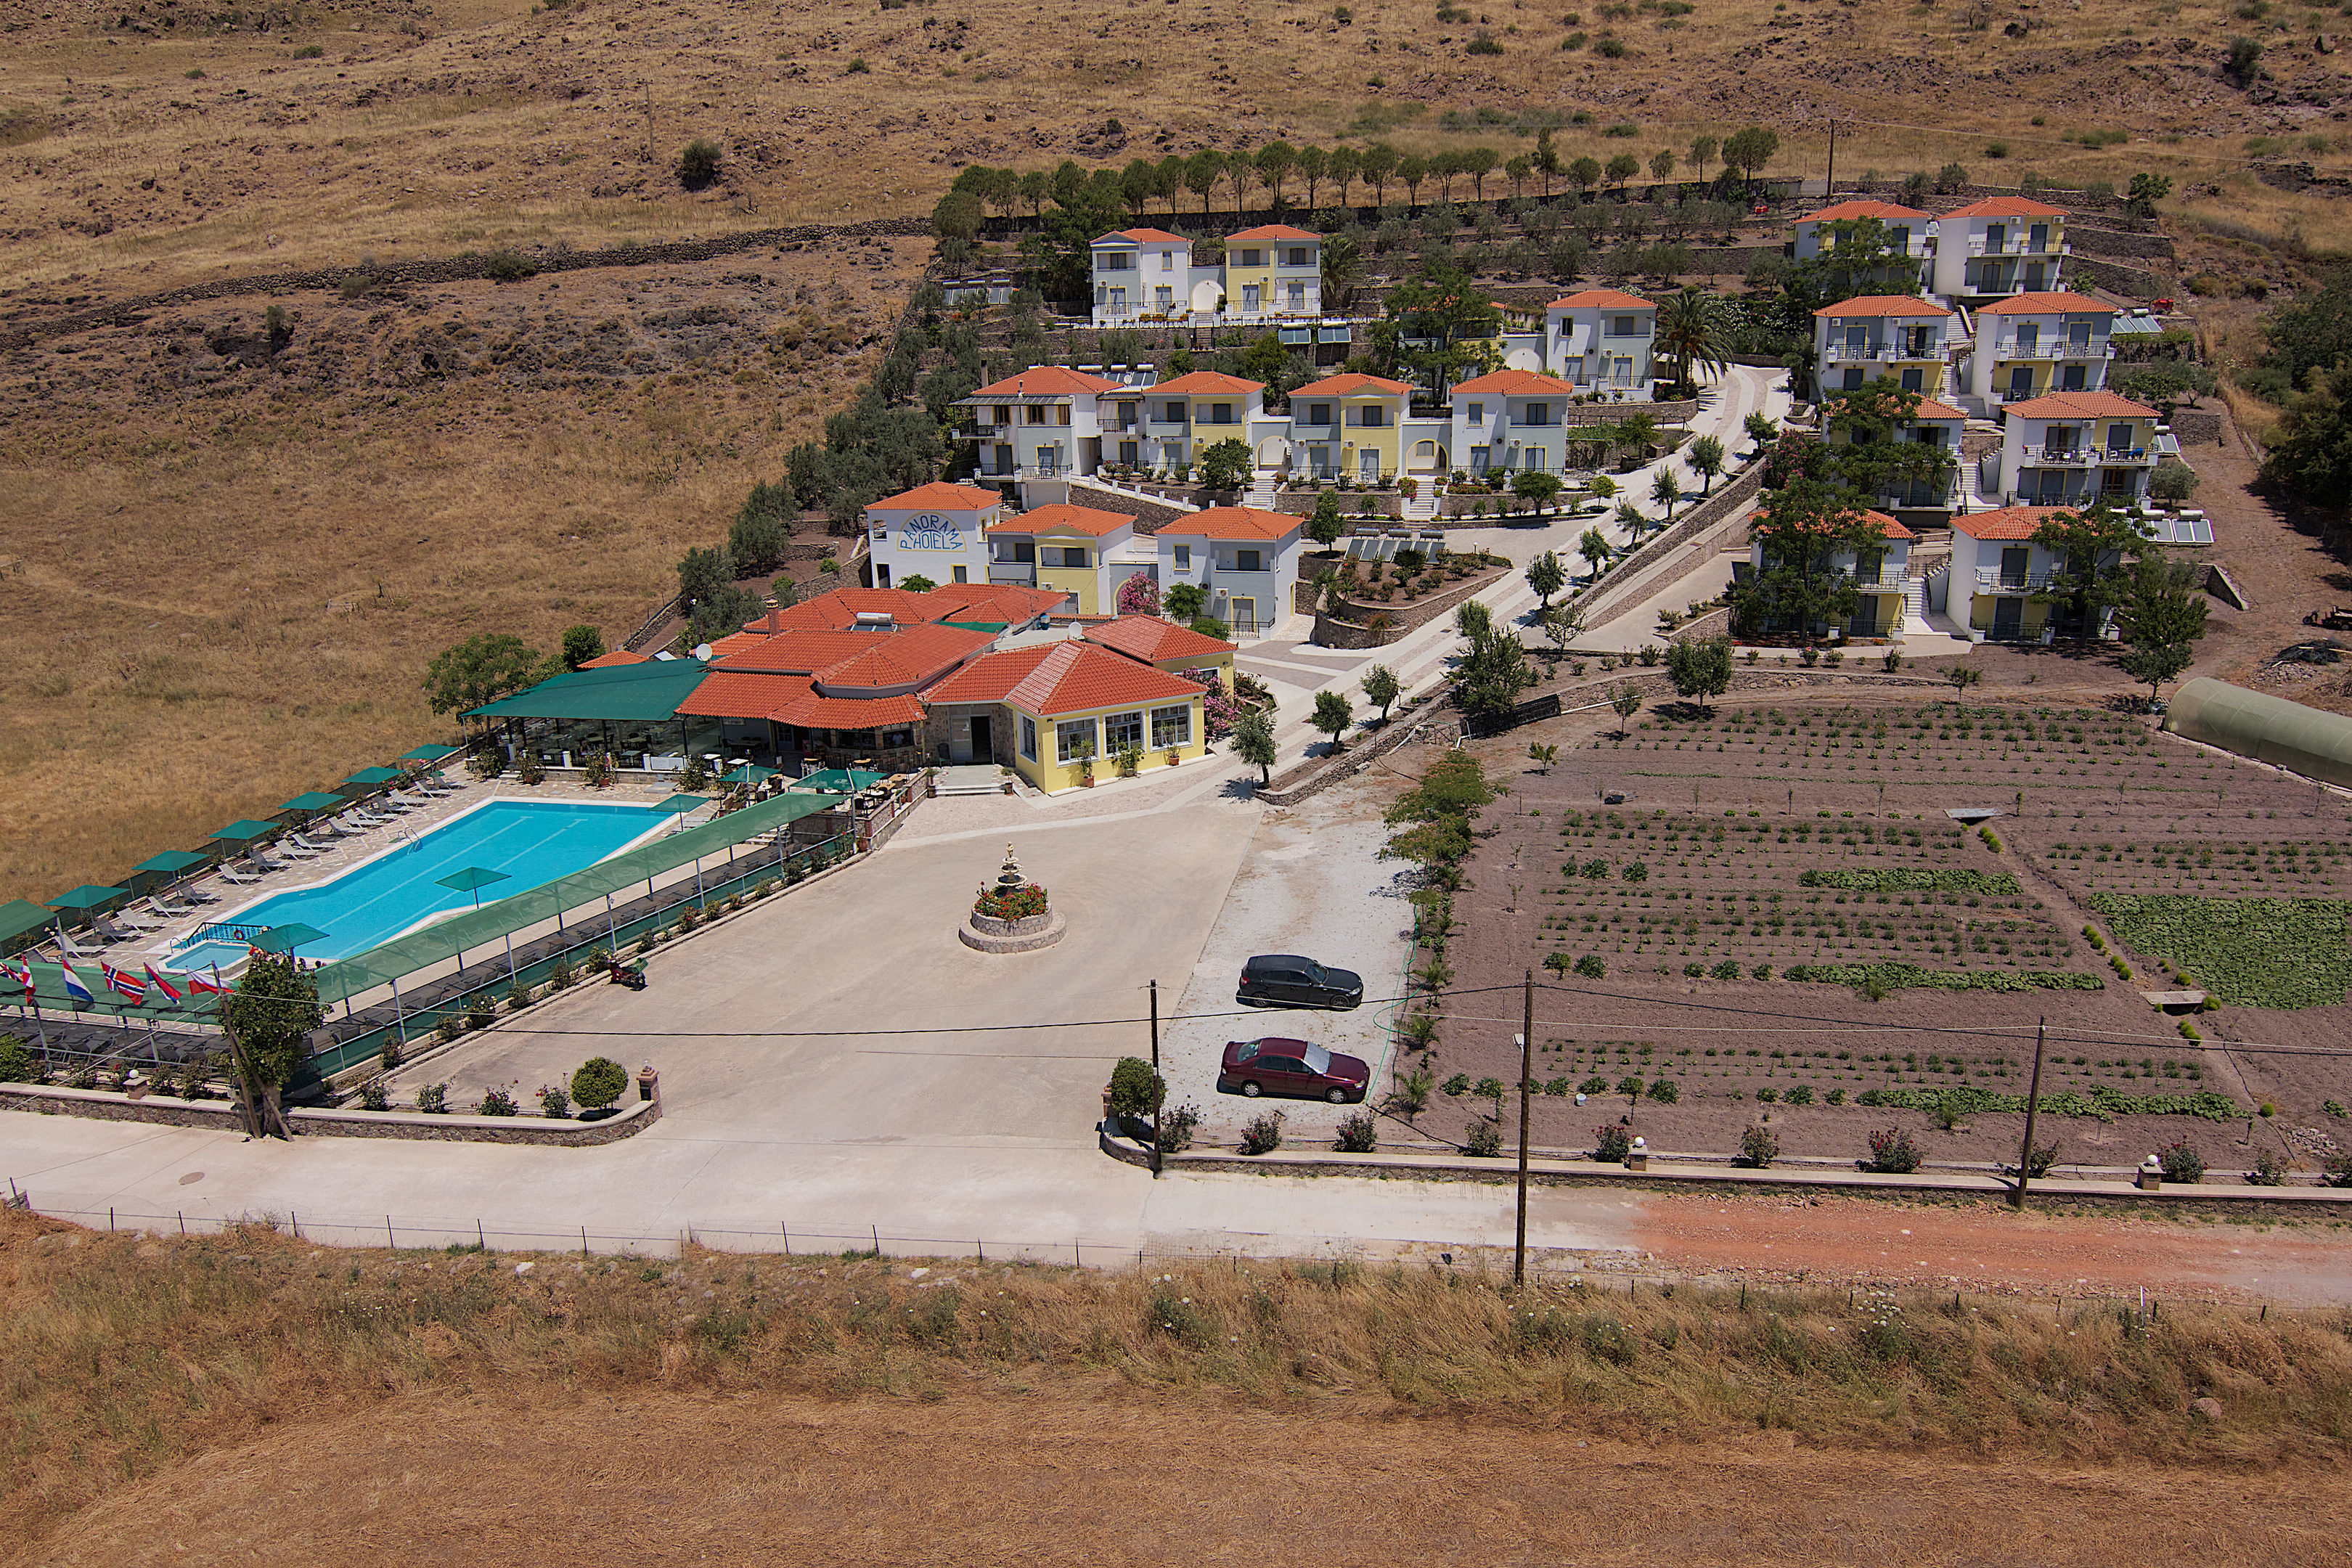 Panorama Resort Hotel